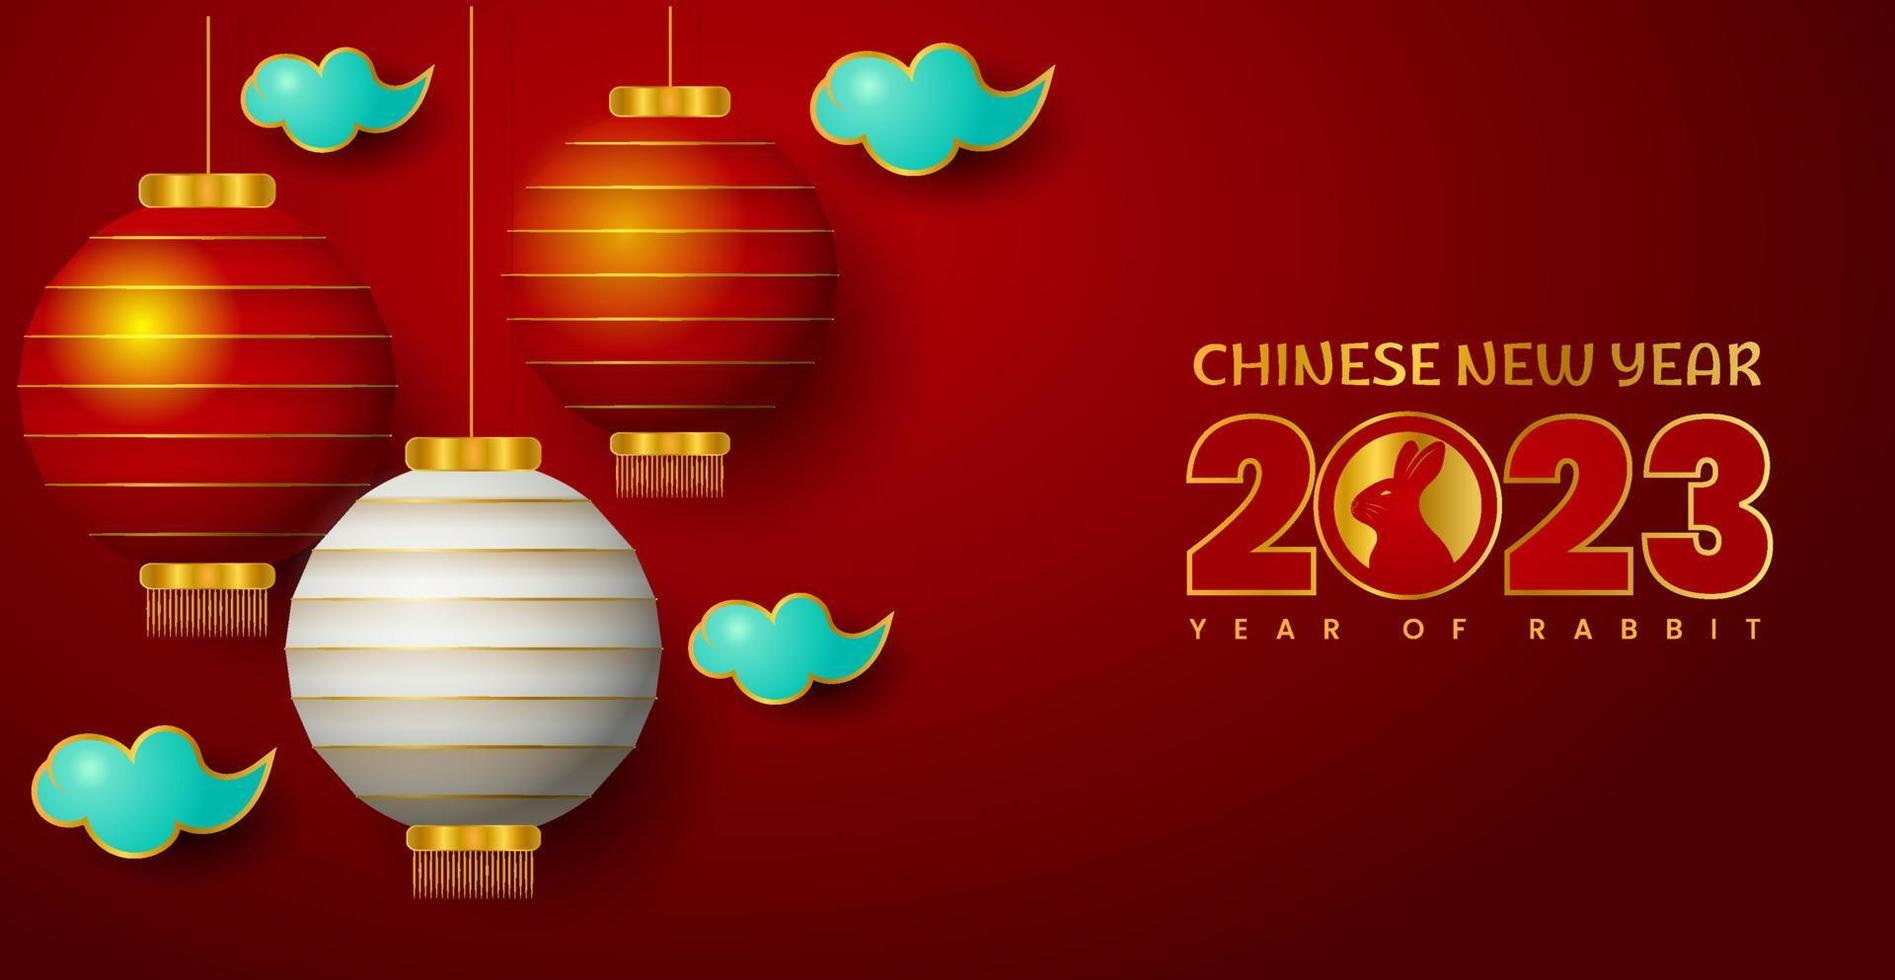 feliz ano novo chinês 2023 ano de fundo de coelho. modelos de cartões-presente festivos com elementos de design 3D realistas. banners, pôster da web, panfletos e brochuras, cartões comemorativos. vetor